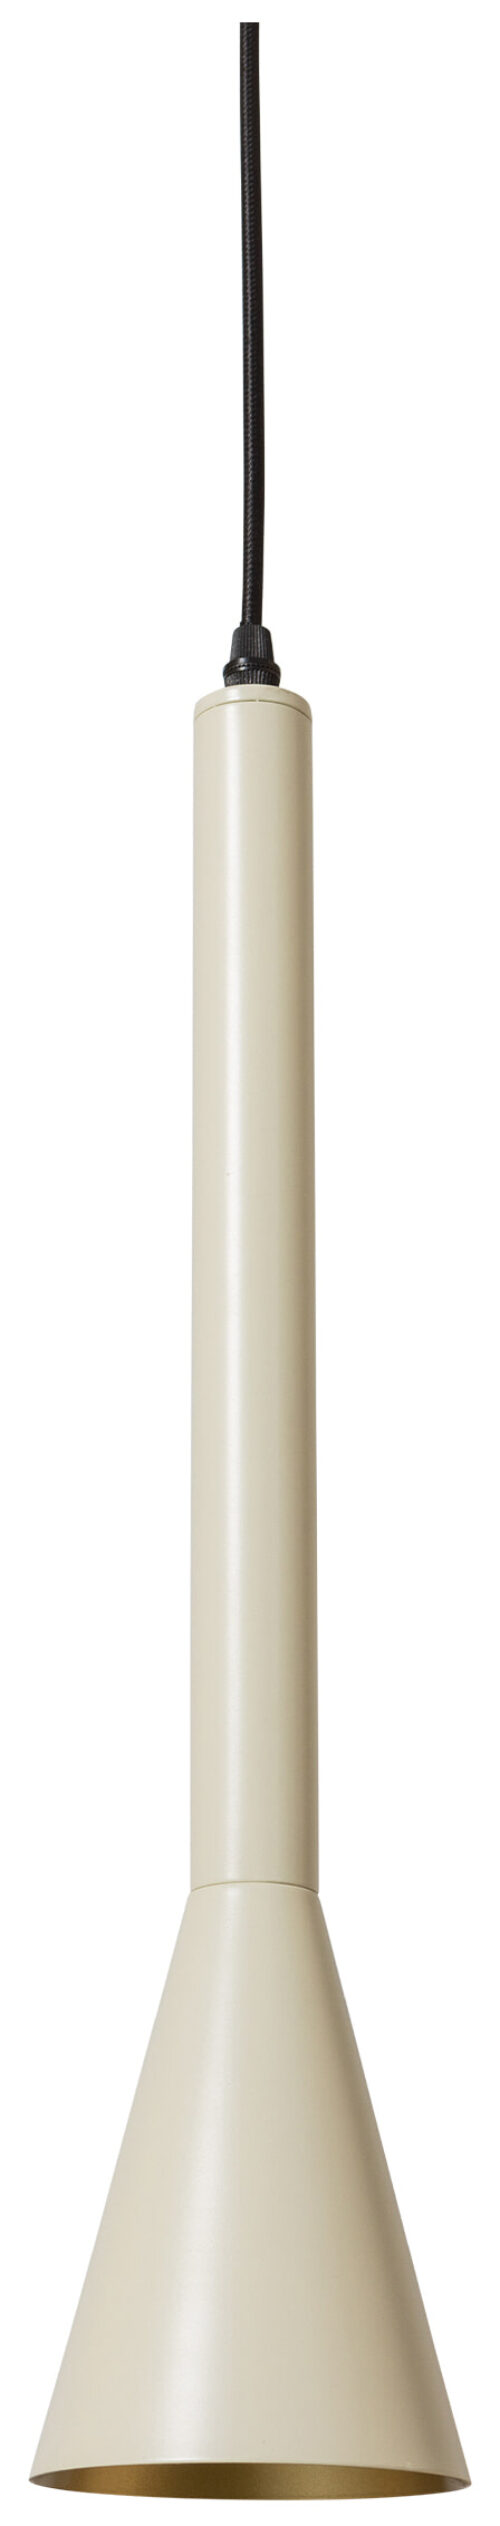 BePureHome Hanglamp Body 45cm hoog - Zand